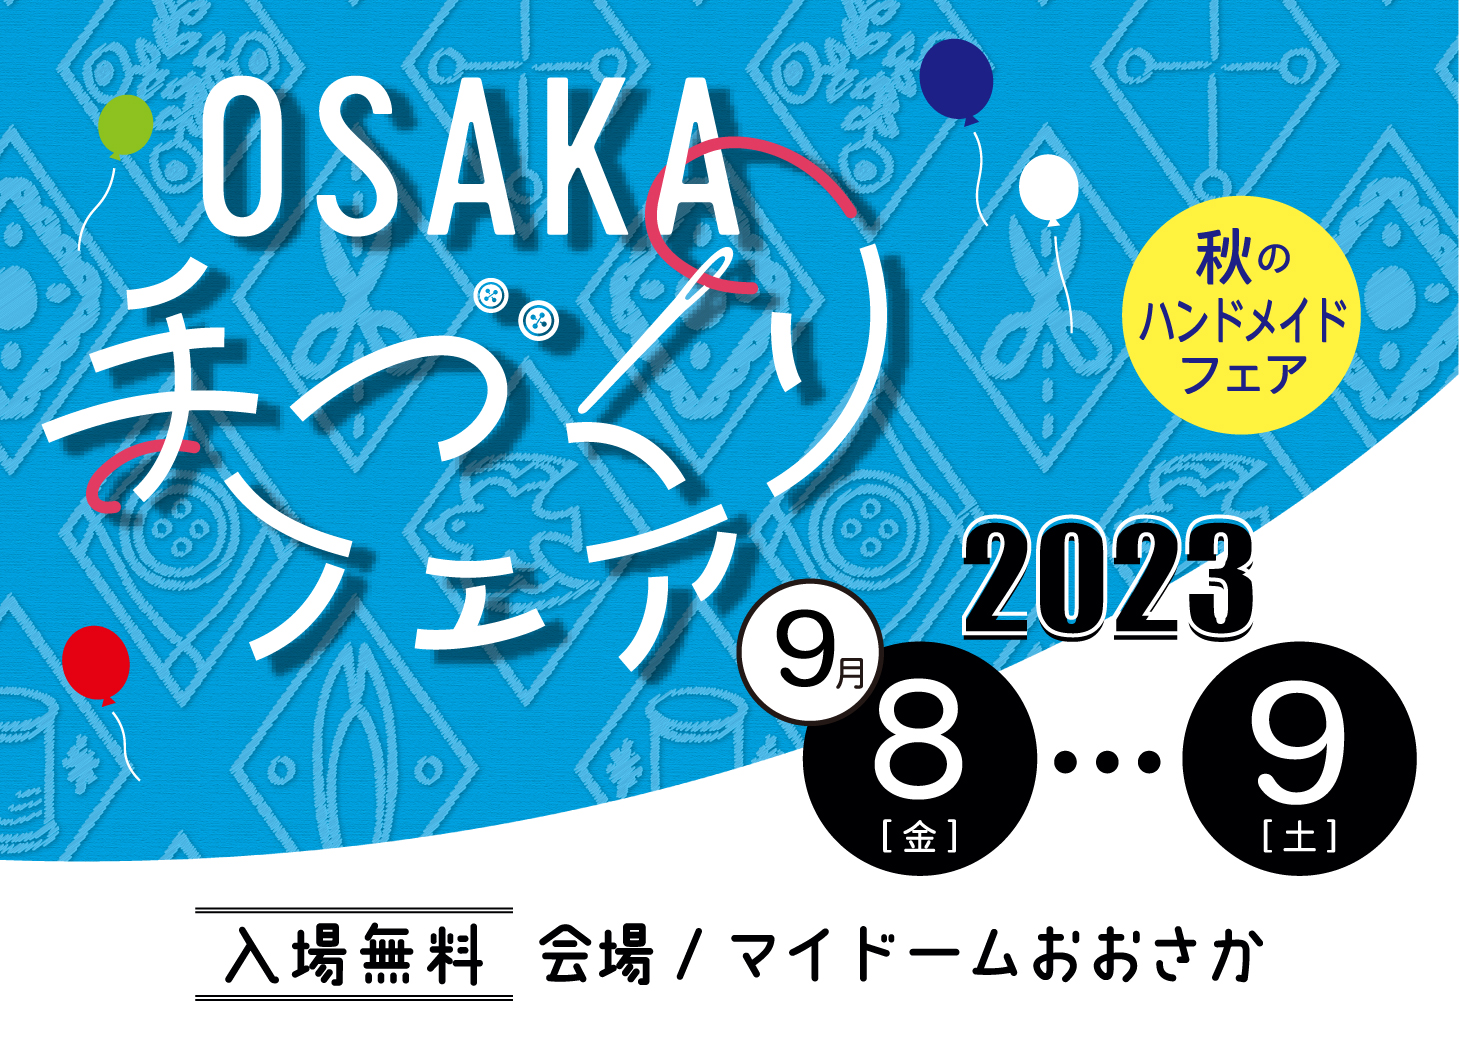 2023 OSAKA手づくりフェア